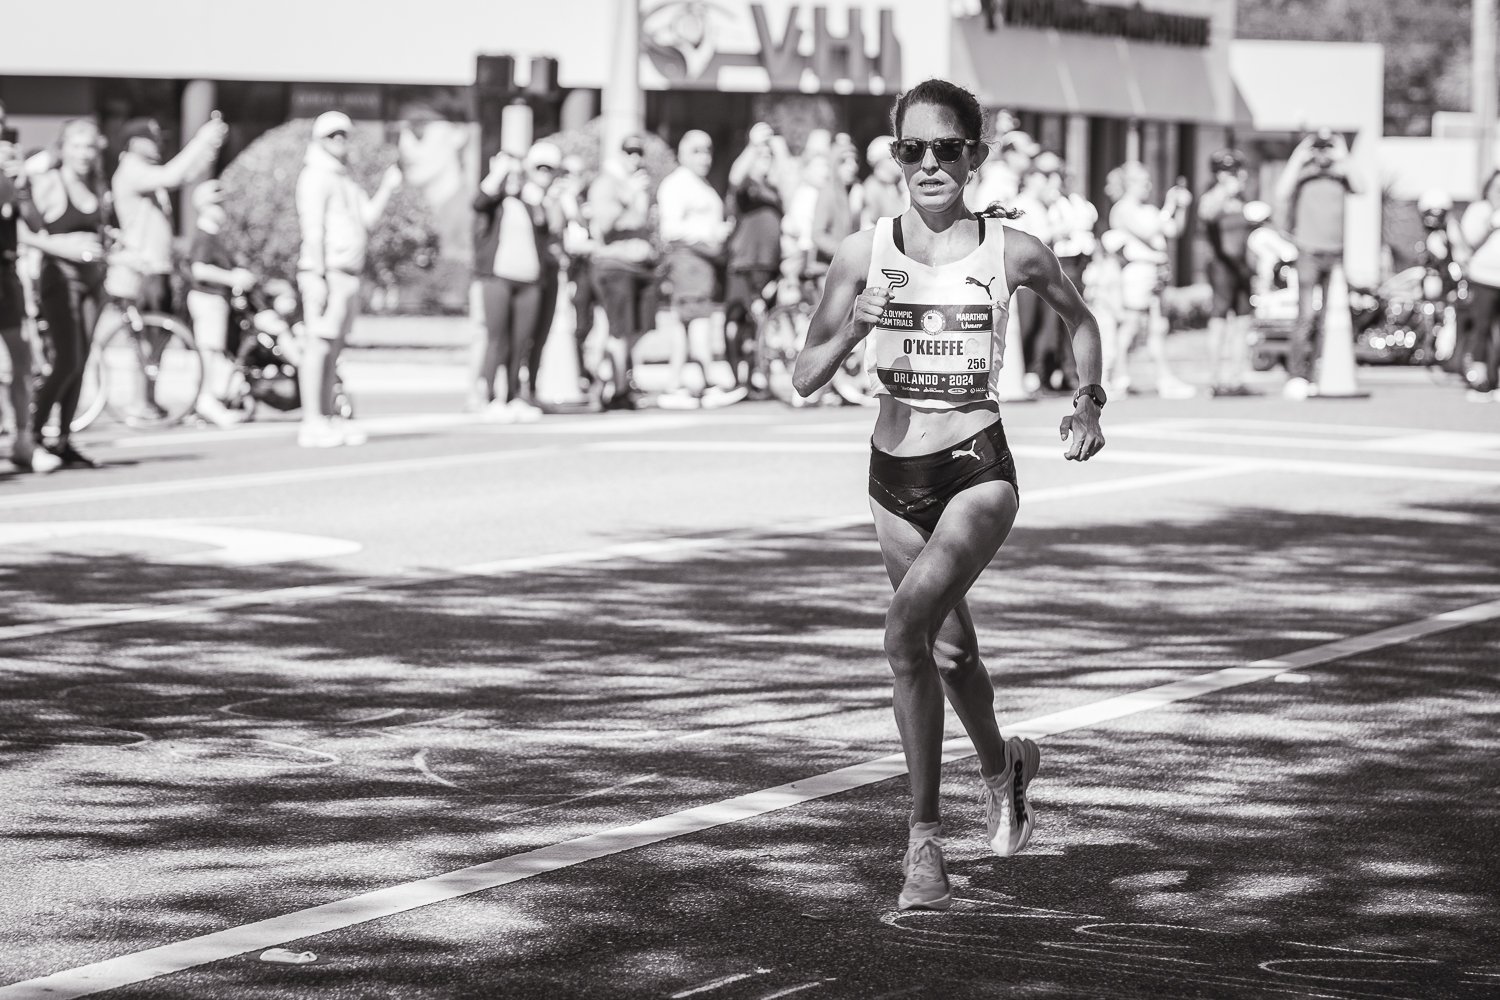  44. Fiona O’Keeffe (02:22:10). Arribó en primer lugar en su debut de maratón, estableciendo el récord para las clasificatorias olímpicas. 